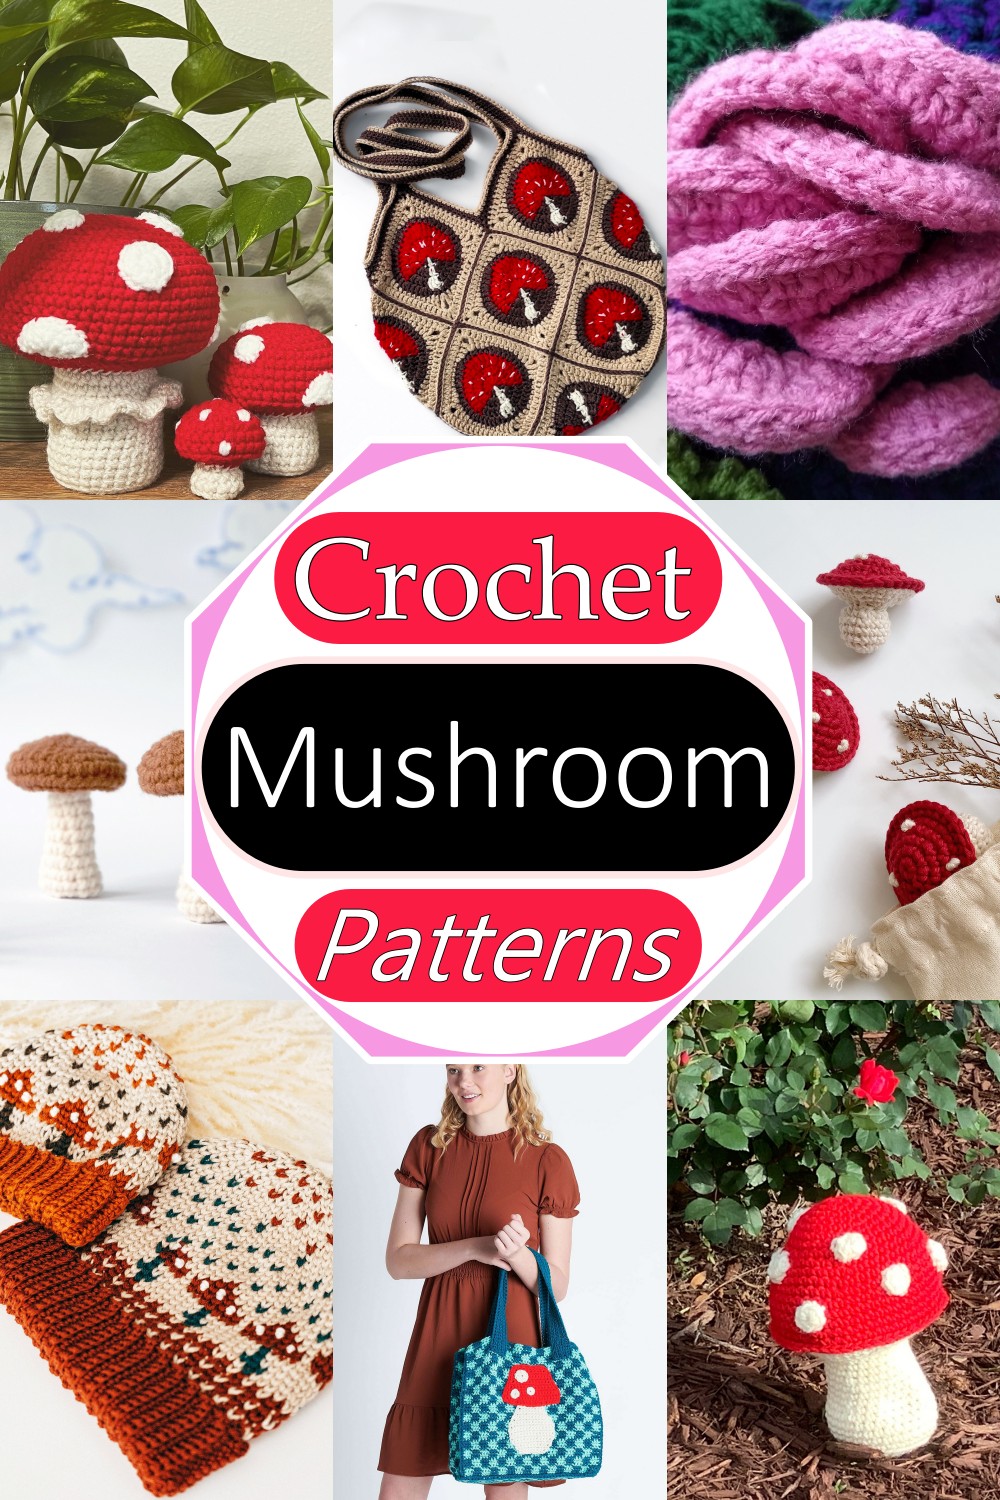 Free Crochet Mushroom Patterns